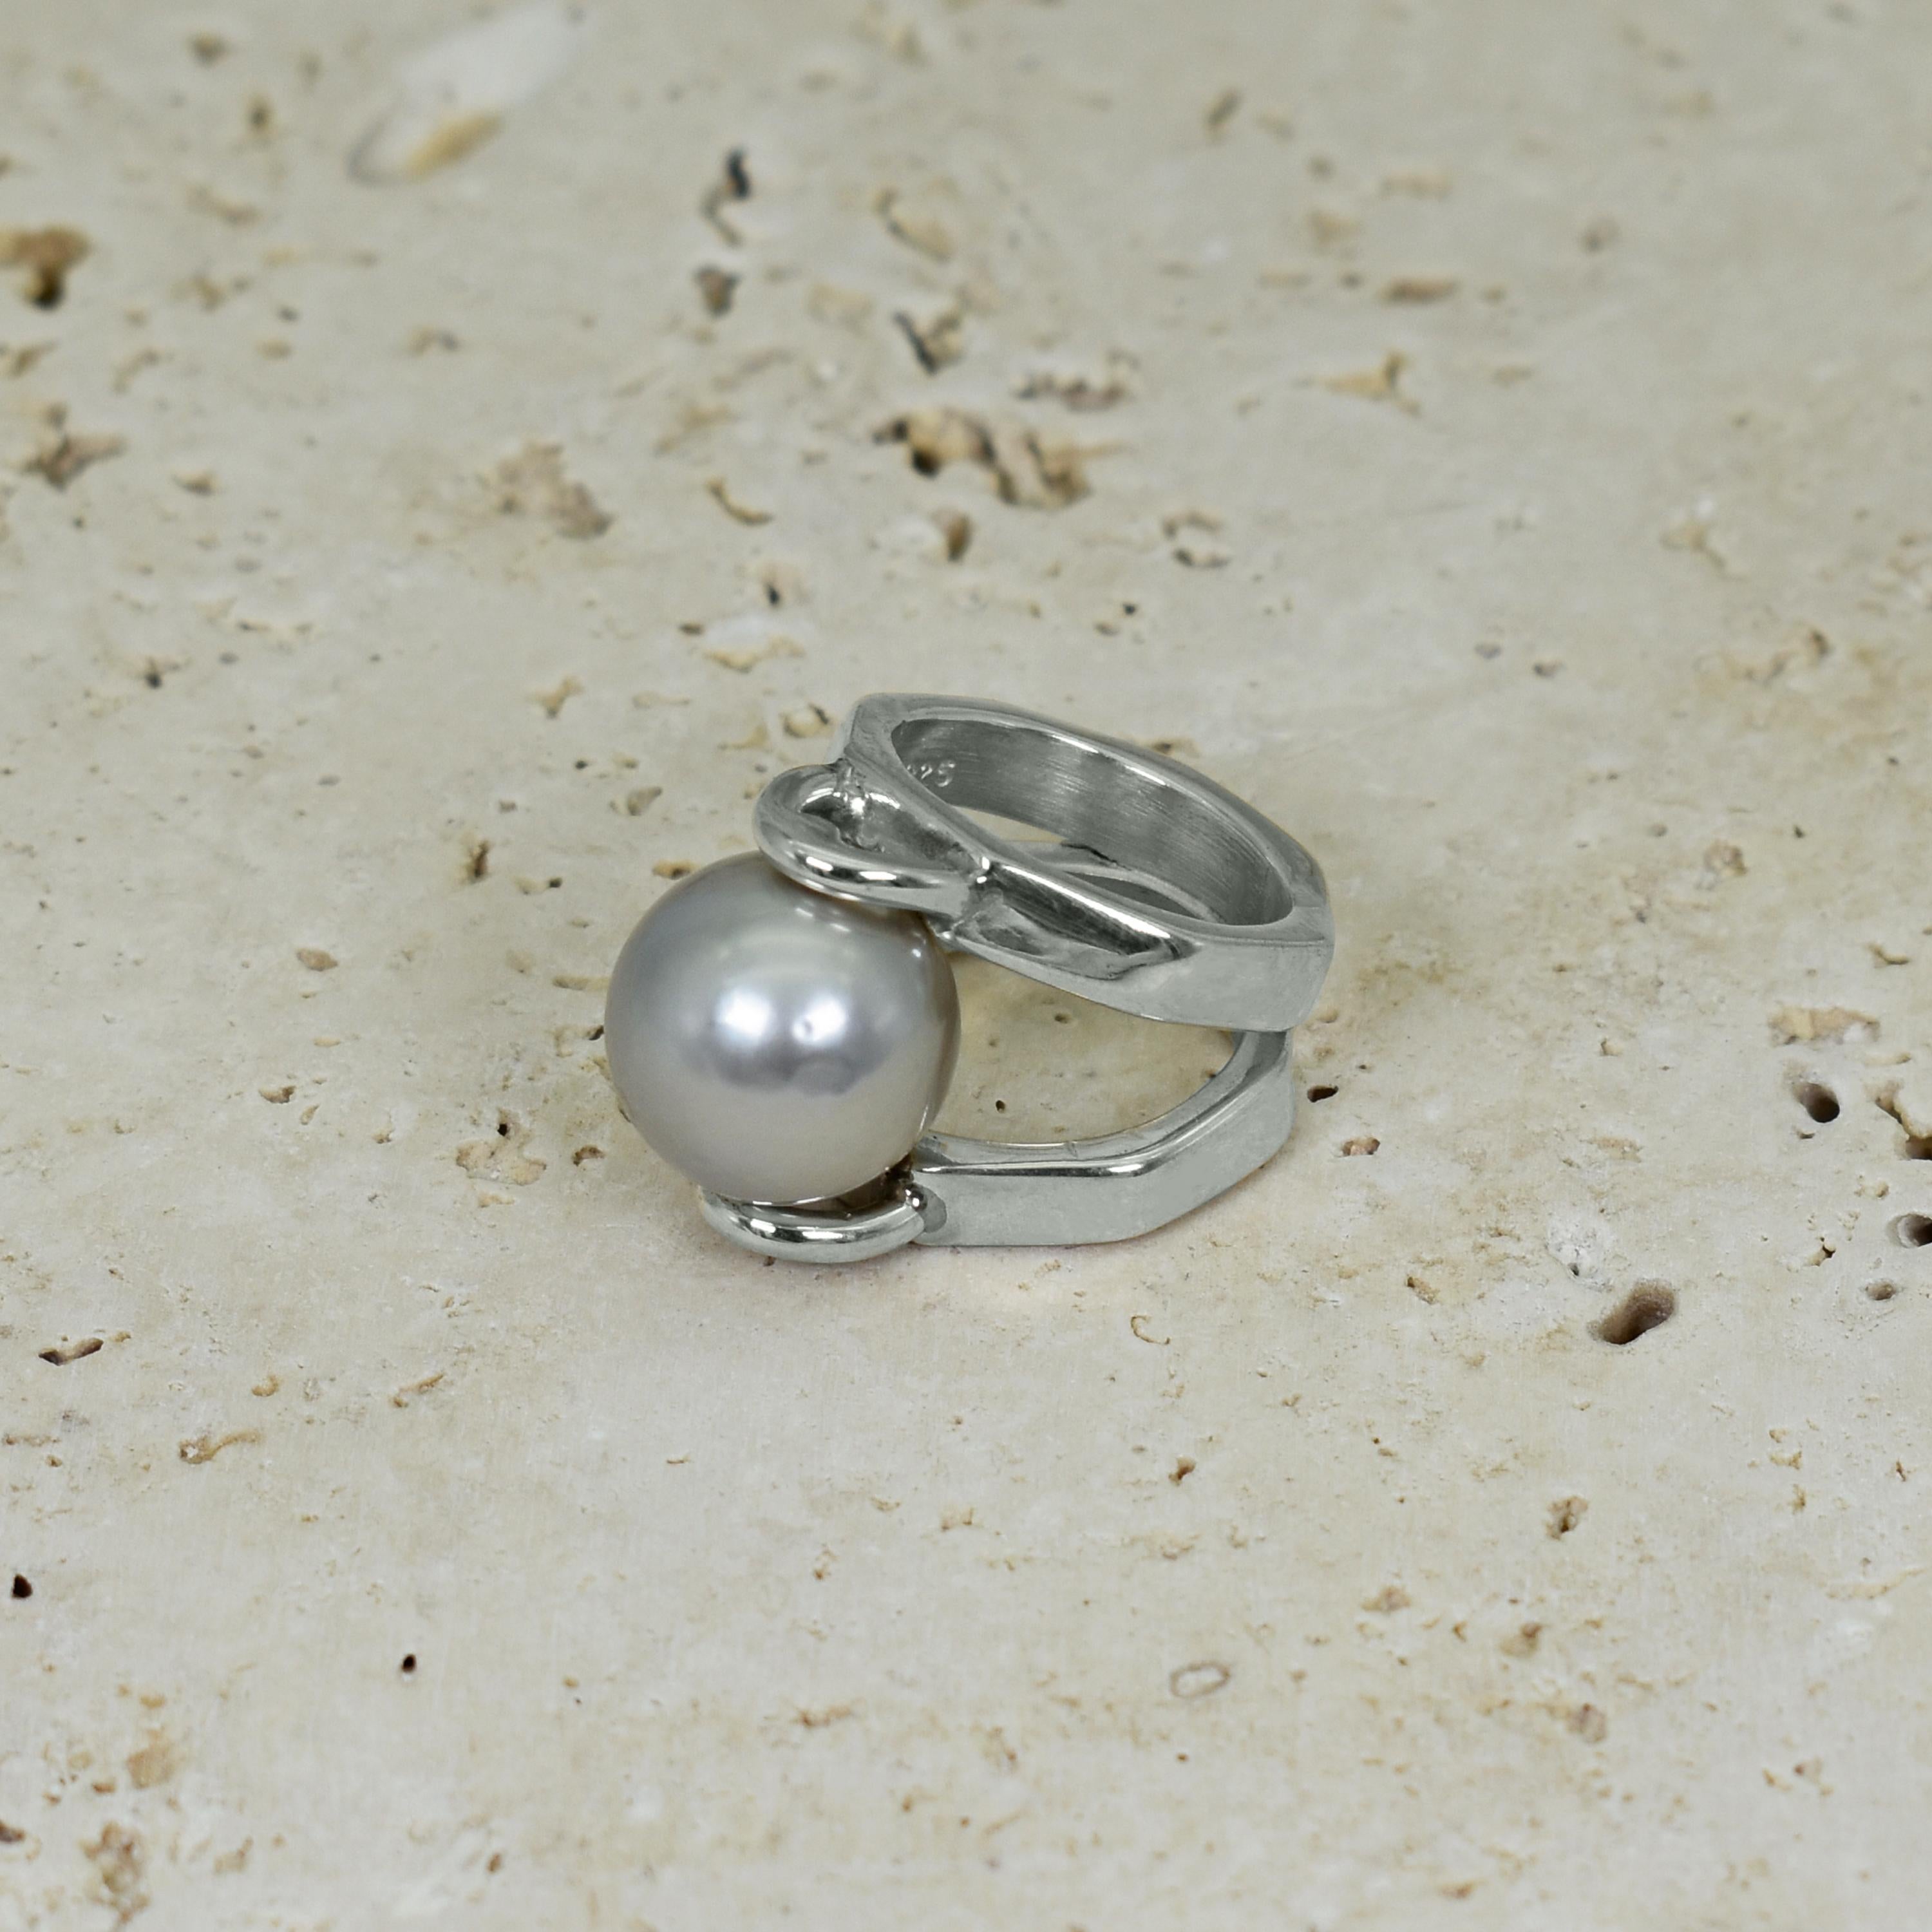 Taubengraue 14-mm-Perle, eingefasst in einen achteckigen Cocktailring mit geteiltem Schaft aus Sterlingsilber. Der Ring hat die Größe 5,75. Einzigartiger und moderner Ring mit einer wunderschönen grauen Perle.